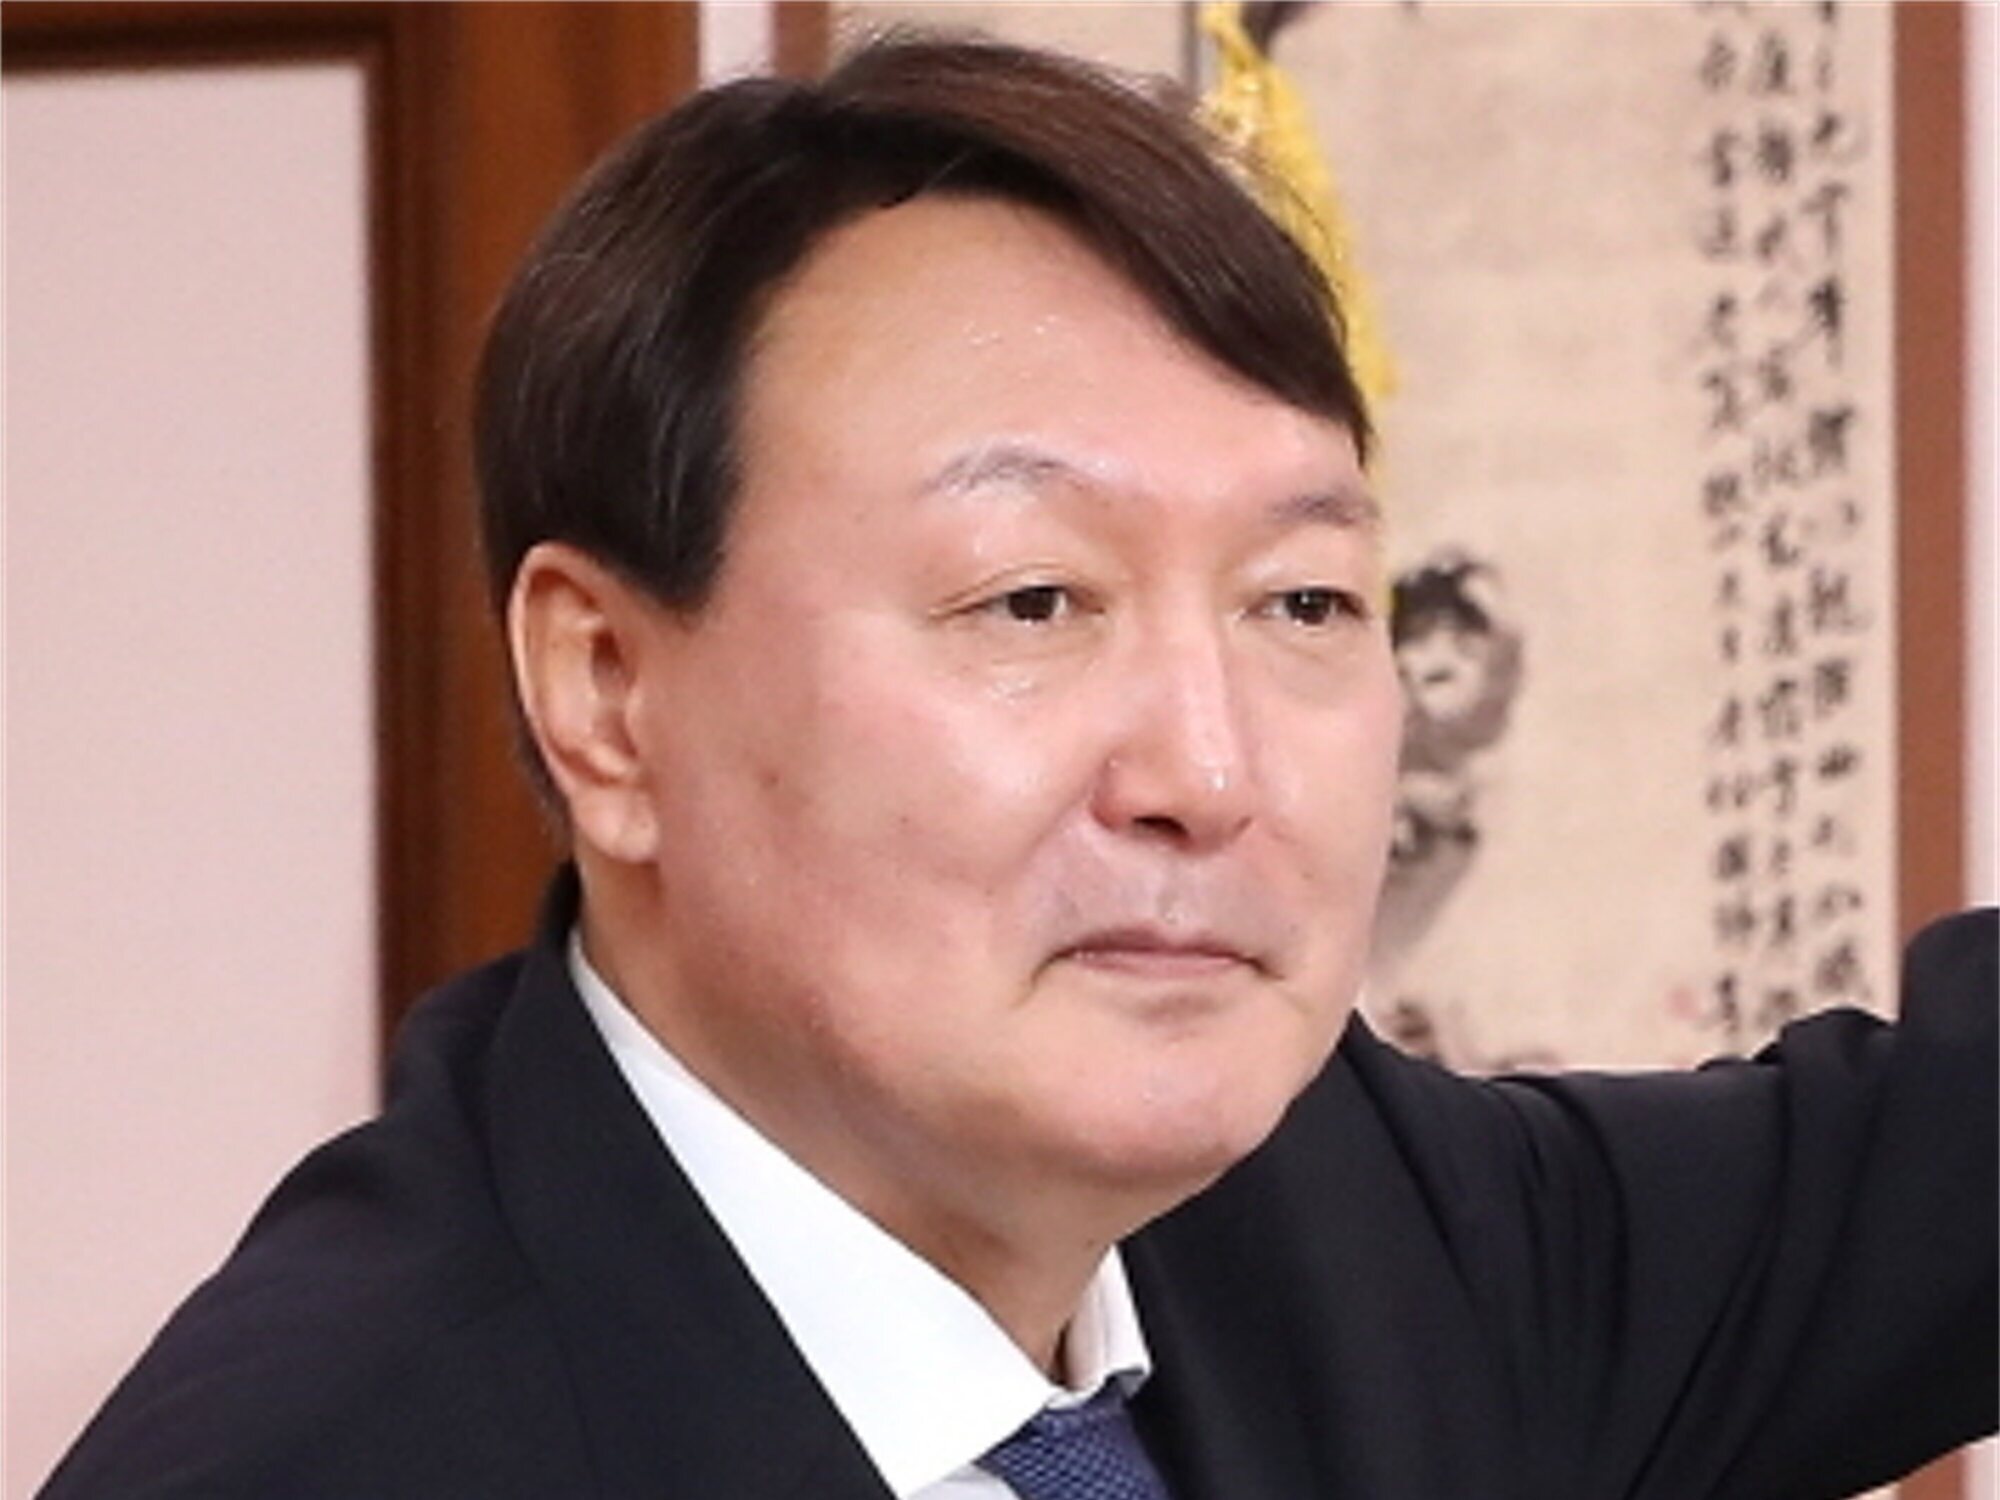 El próximo presidente de Corea del Sur, el derechista Yoon Suk-yeol,  defiende trabajar 120 horas semanales - Los Replicantes